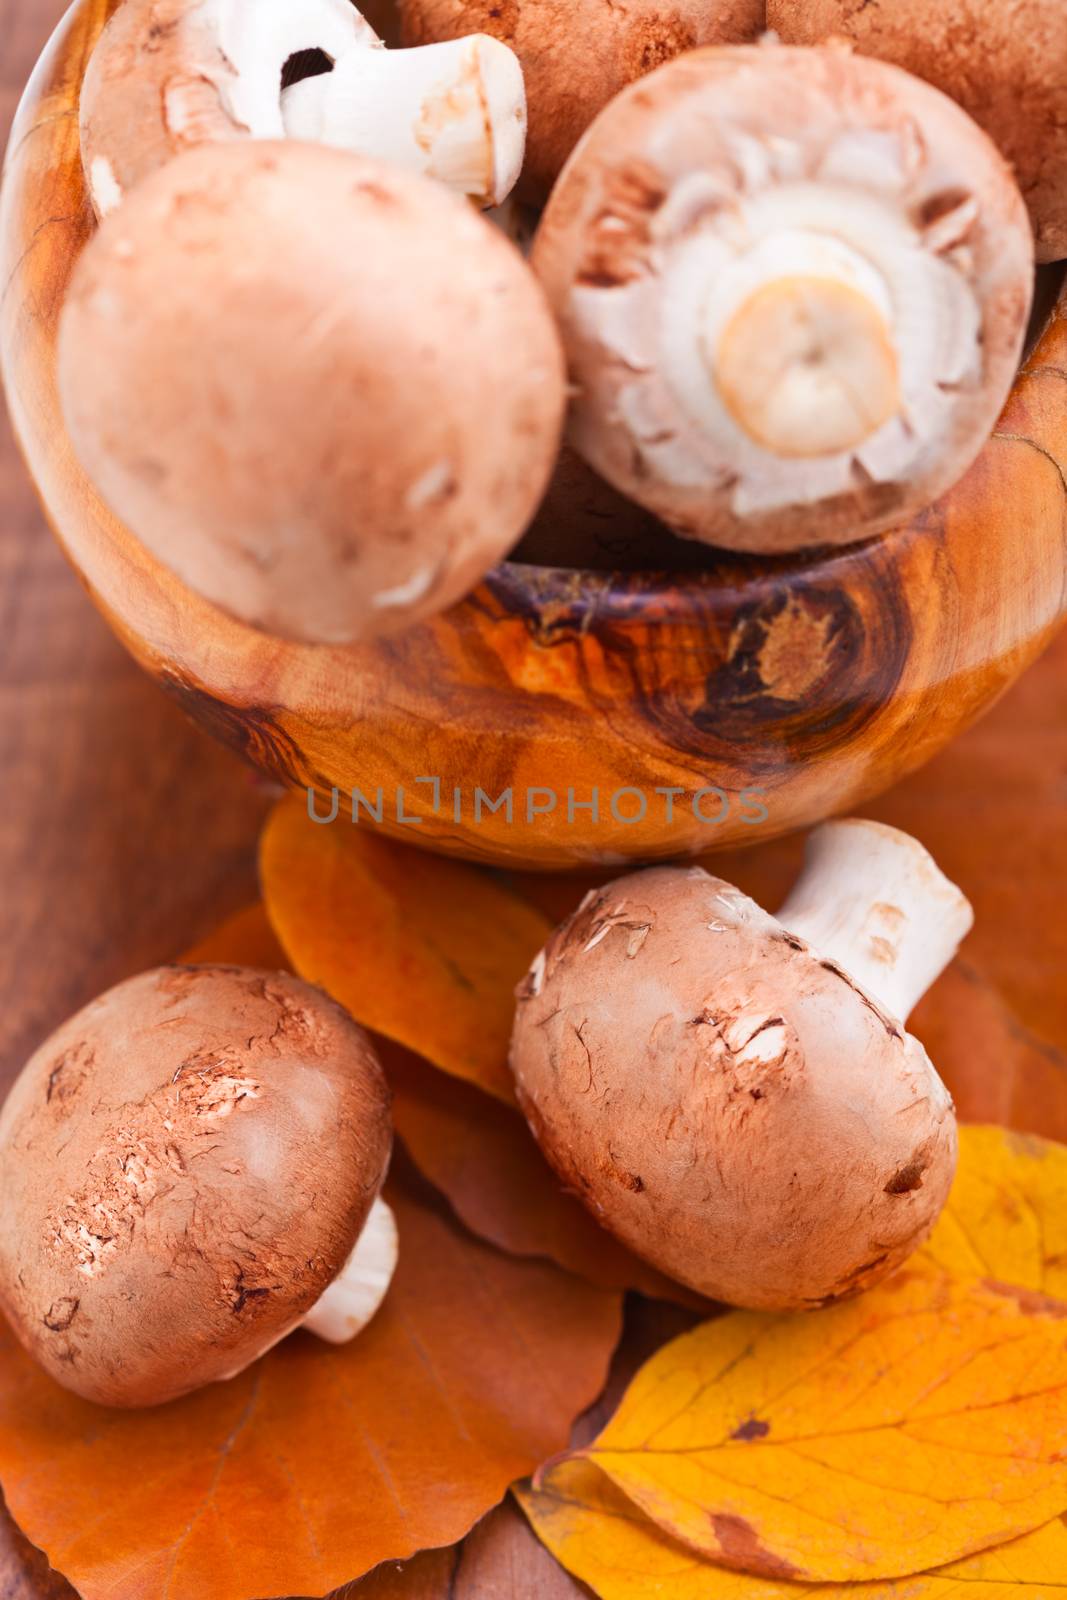 Mushrooms: Champignons mushroons by supercat67